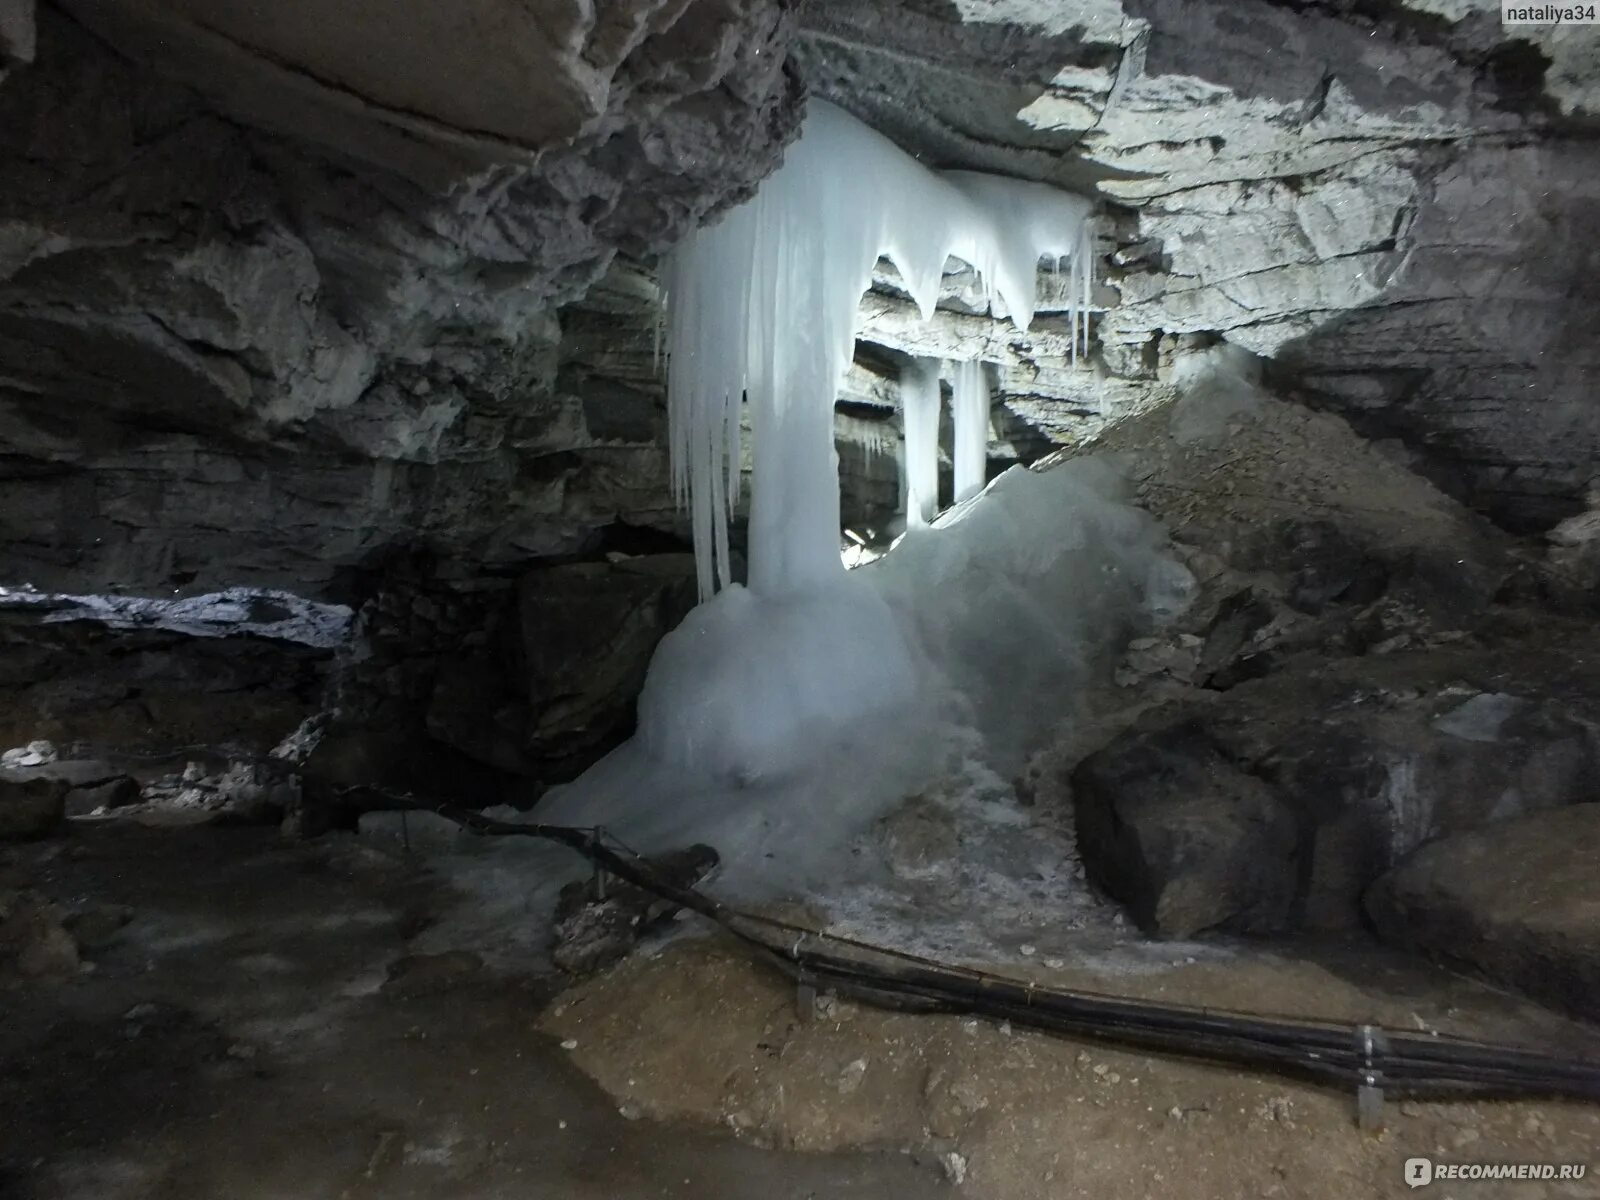 2 км под землей. Кард реальных пацанов про ледяную пещеру. Идрисова пещера отзывы фото.